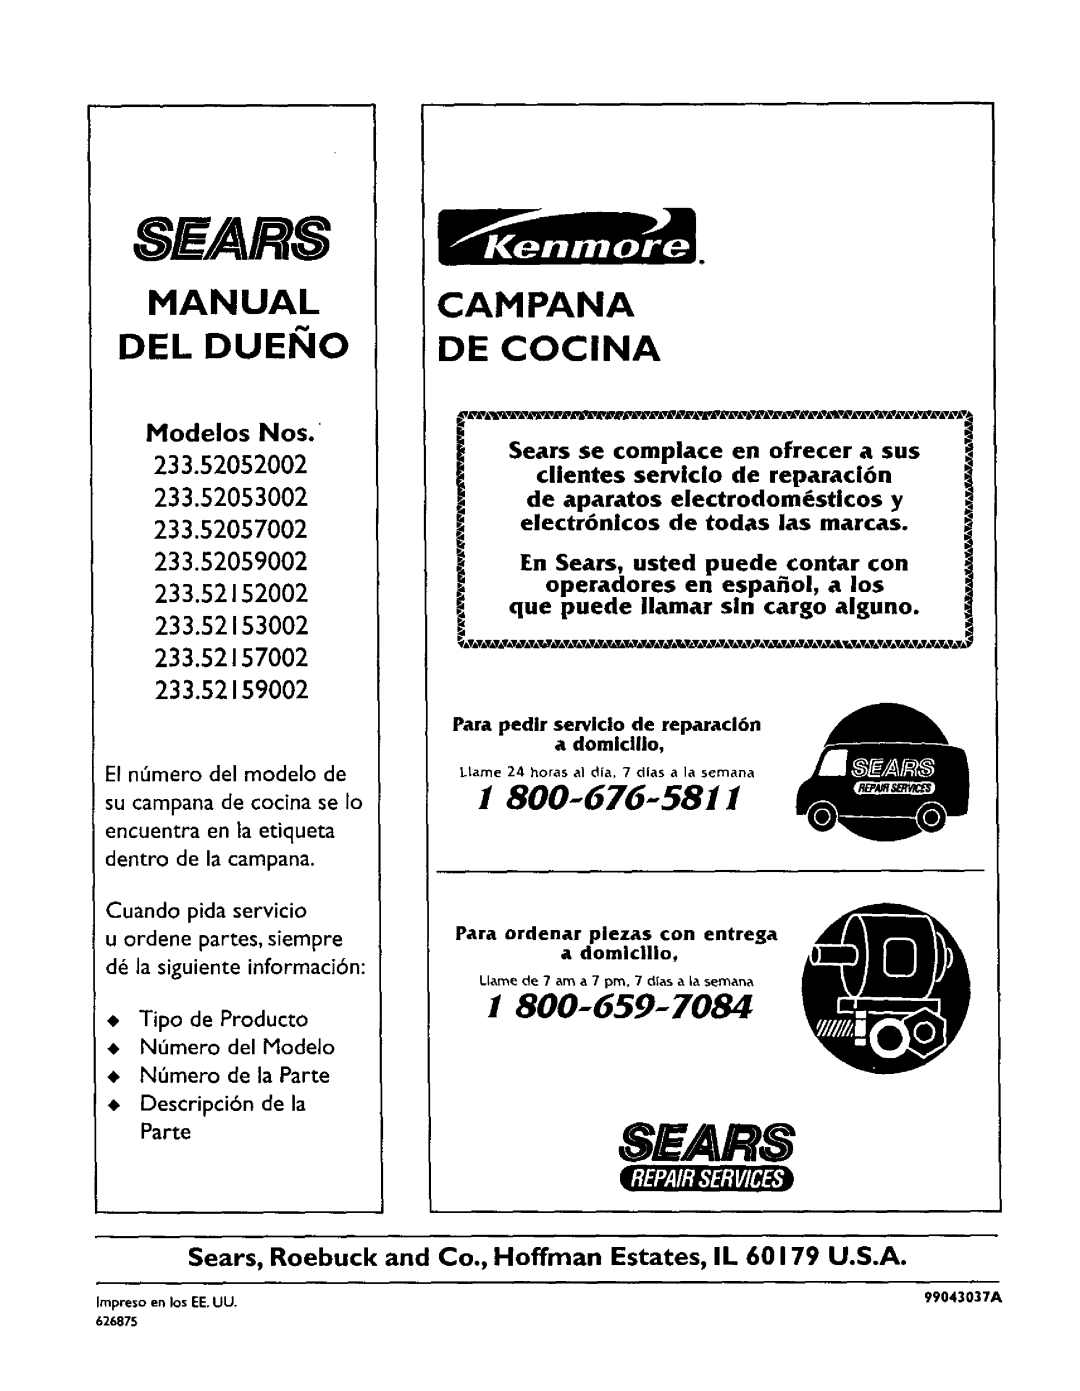 Sears 233.52153 Manual Del Duei Io, ModelosNos, Sh/Ars, Campana De Cocina, I800-676.-5811, El n mero clel modelo de 